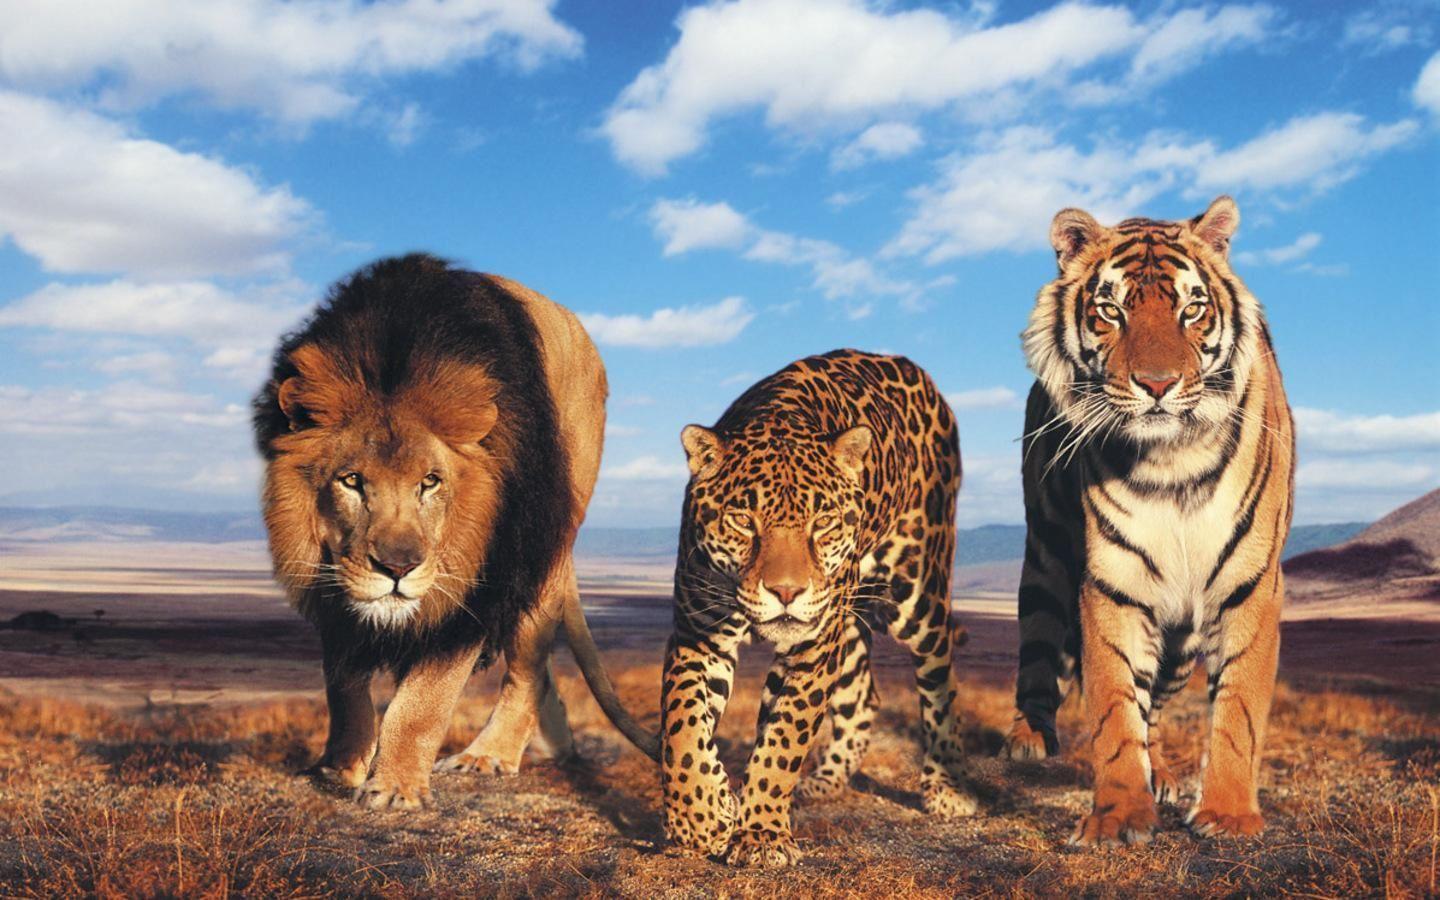 Wild Cats Tiger Lion Cheetah HD Wallpaper. High Definition Wallpaper